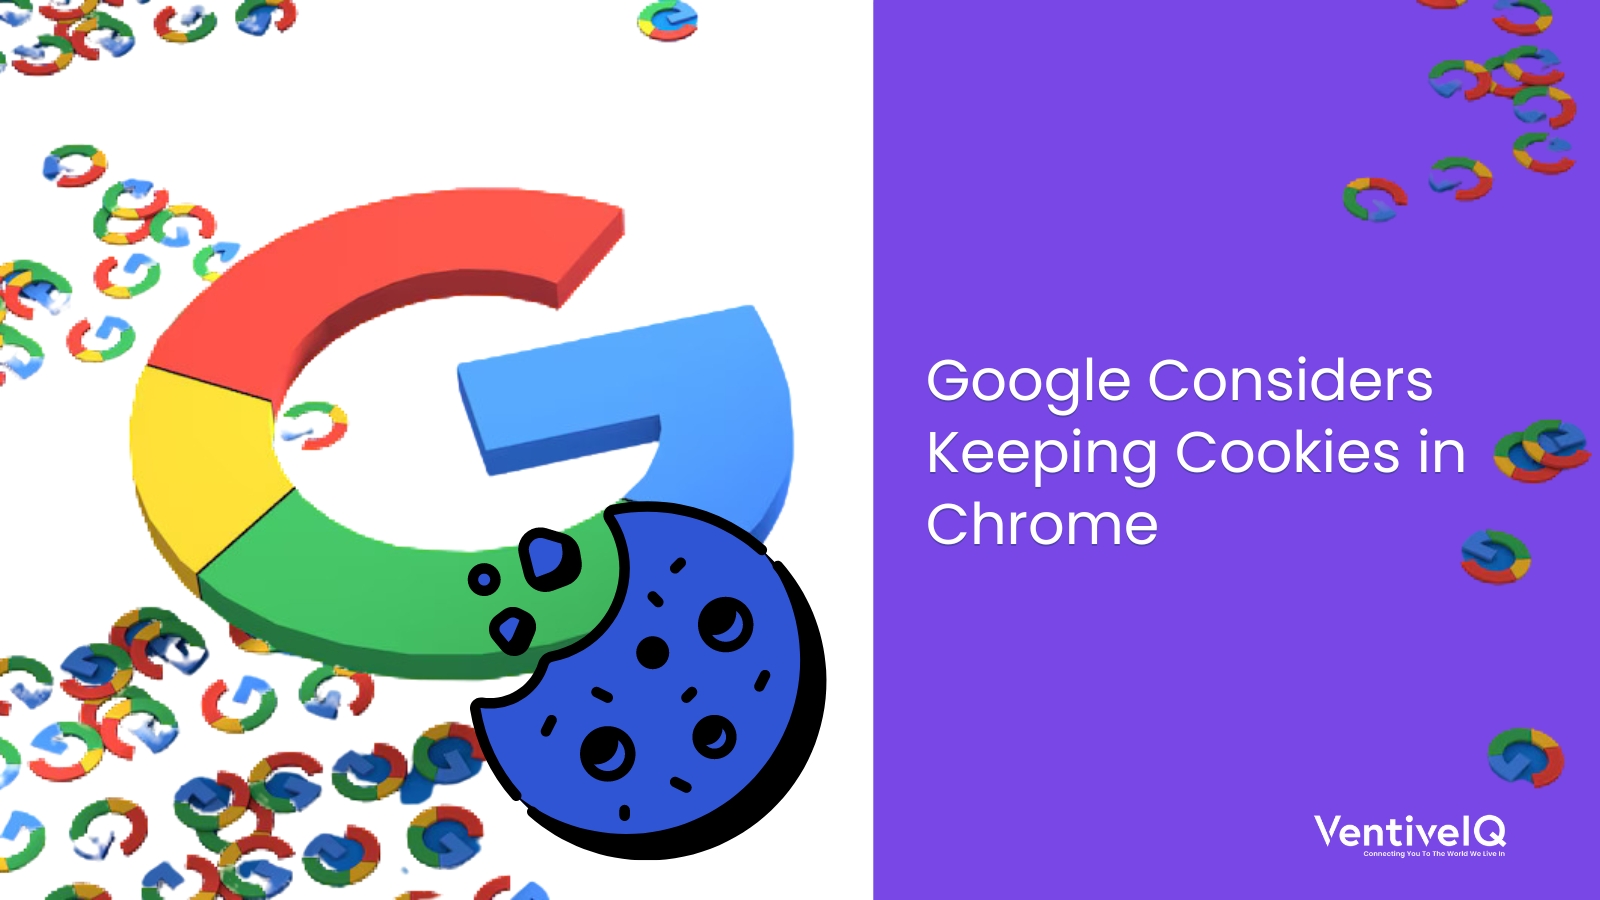 Google Considers Keeping Cookies in Chrome